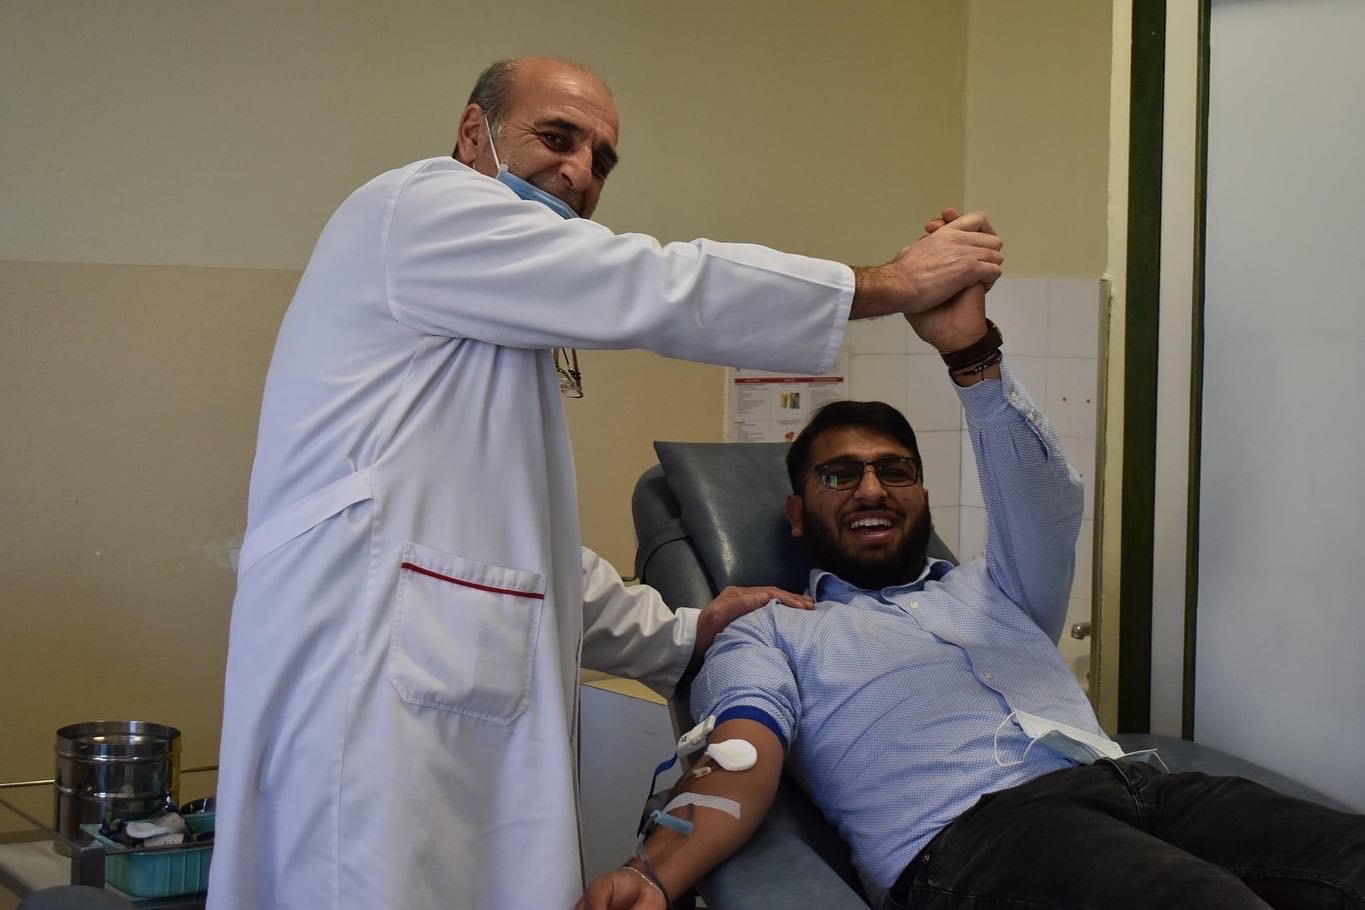 NVO ALFA Centar iz Nikšića i DDK „FAP MAŠINA“ organizovali akciju dobrovoljnog darivanja krvi